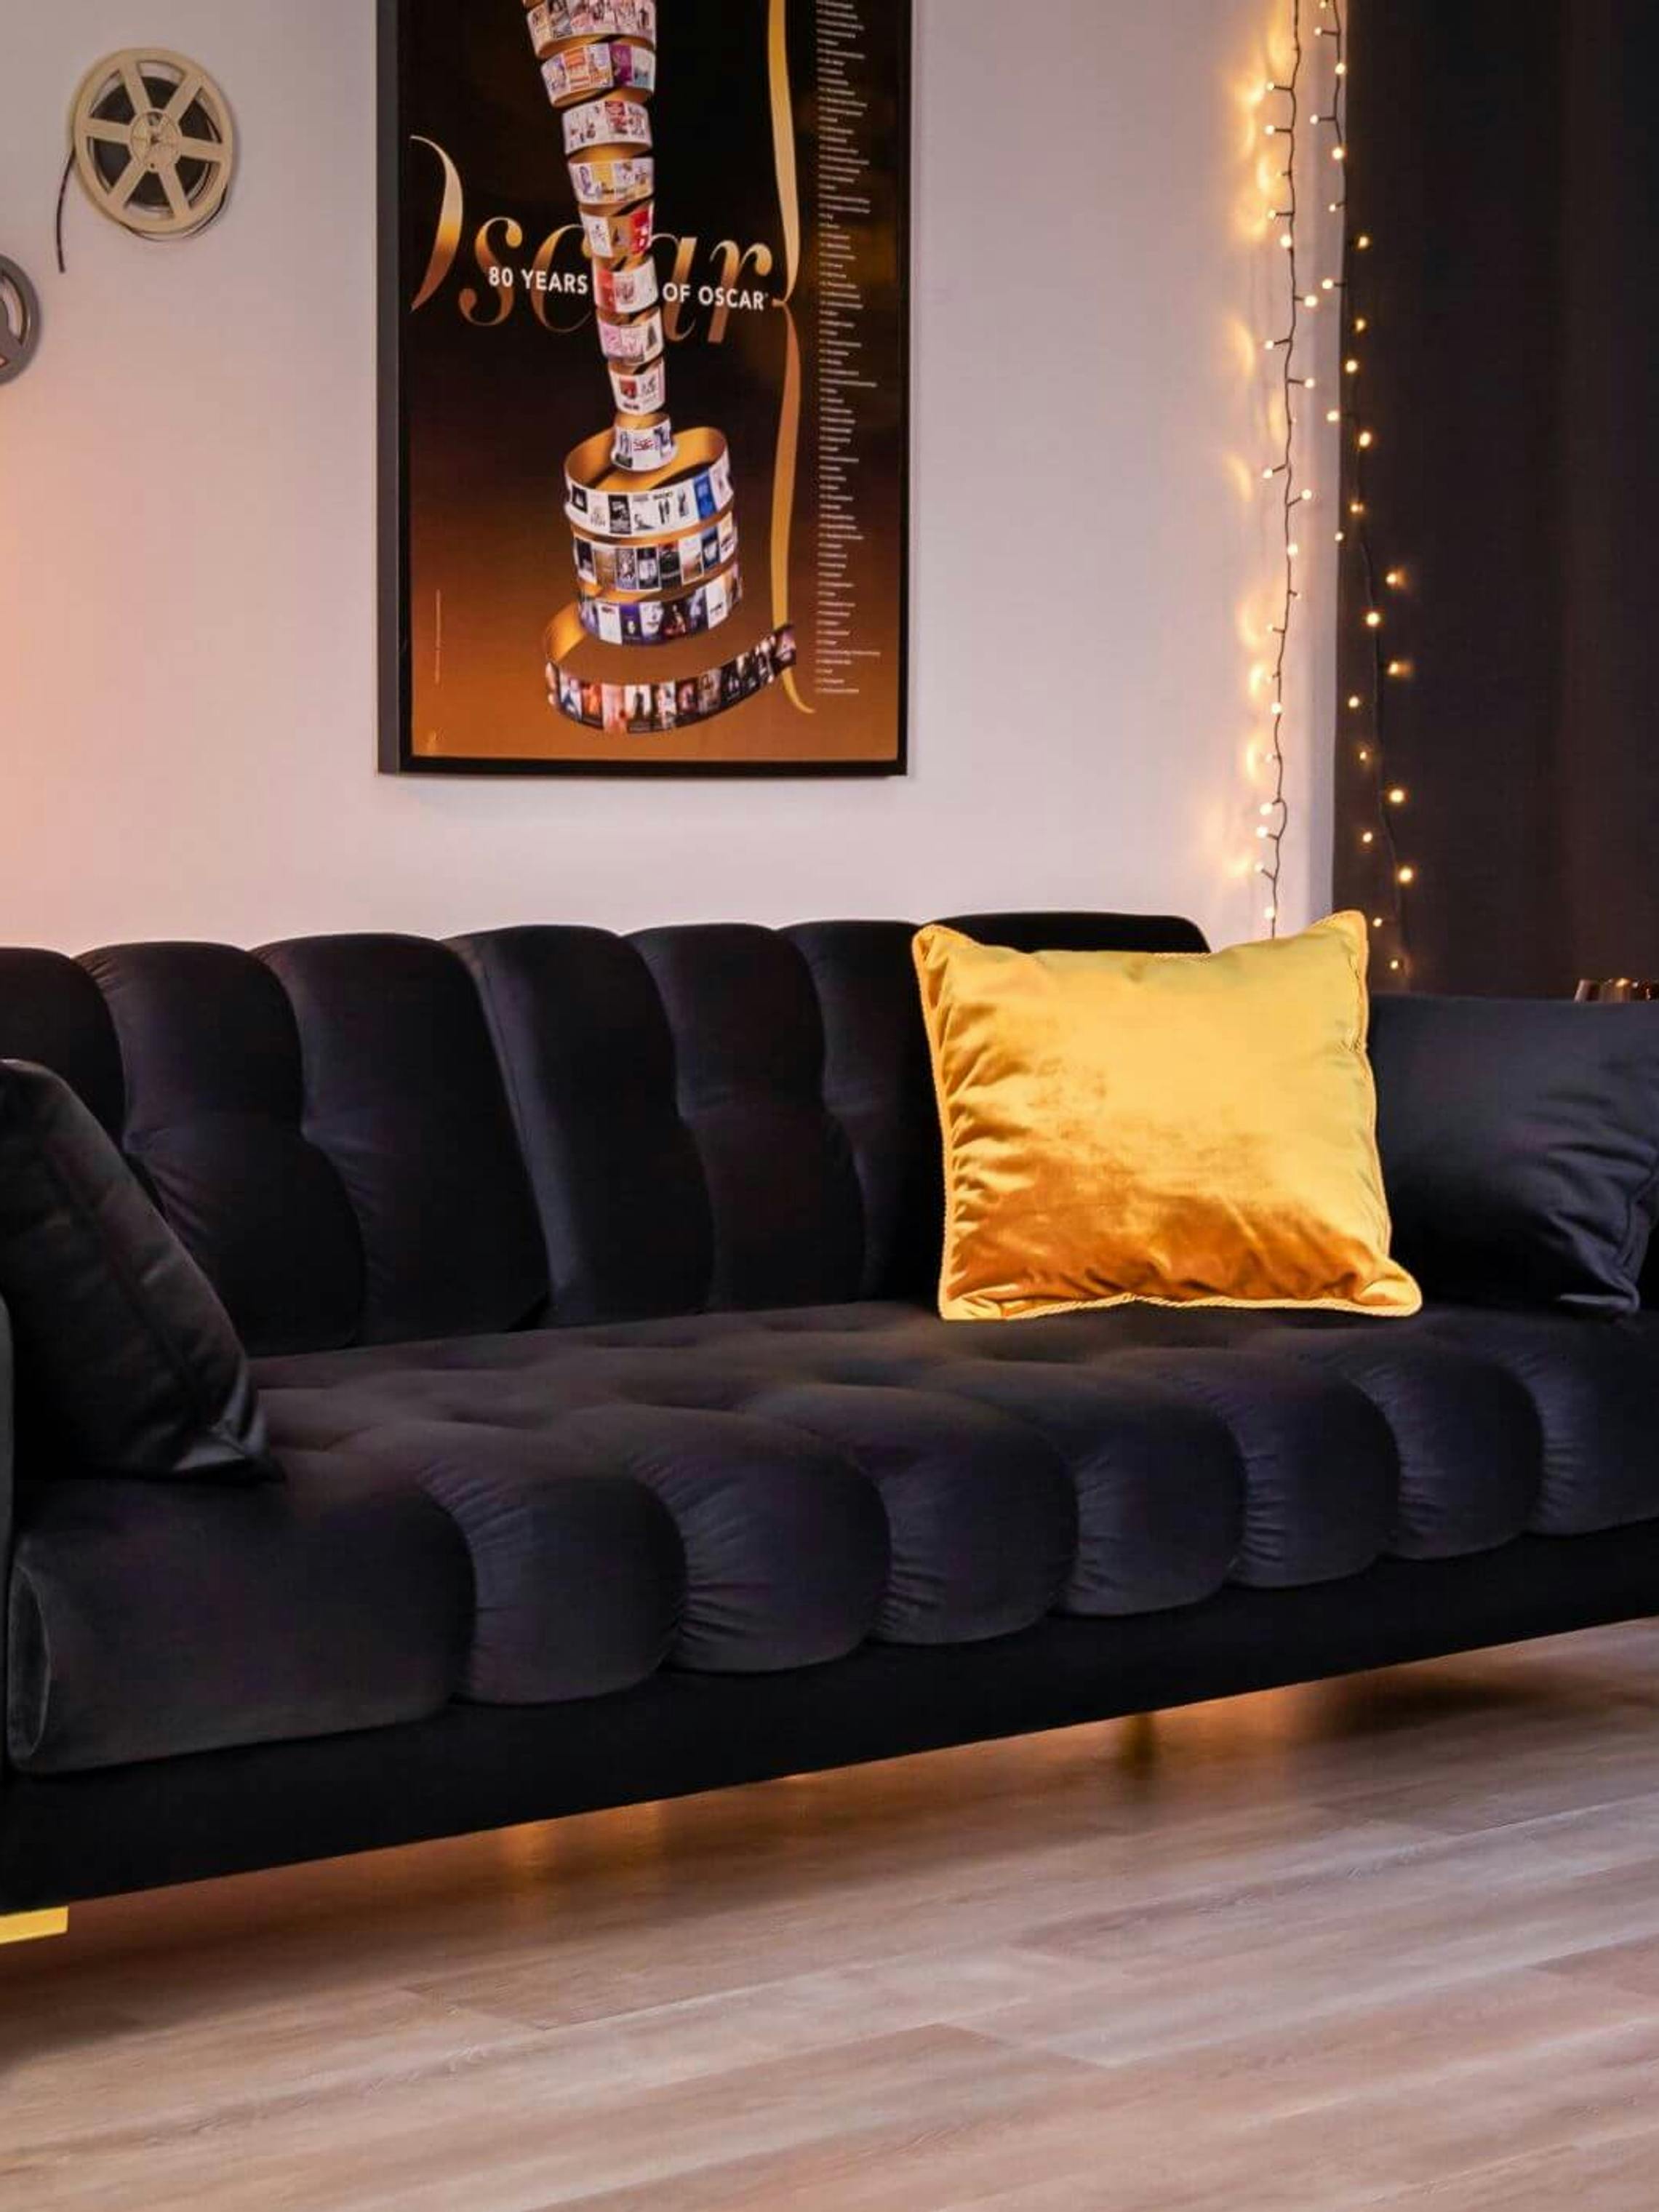 Czarna pikowana sofa jest idealnym miejscem do spędzenia wieczoru na oglądaniu filmów